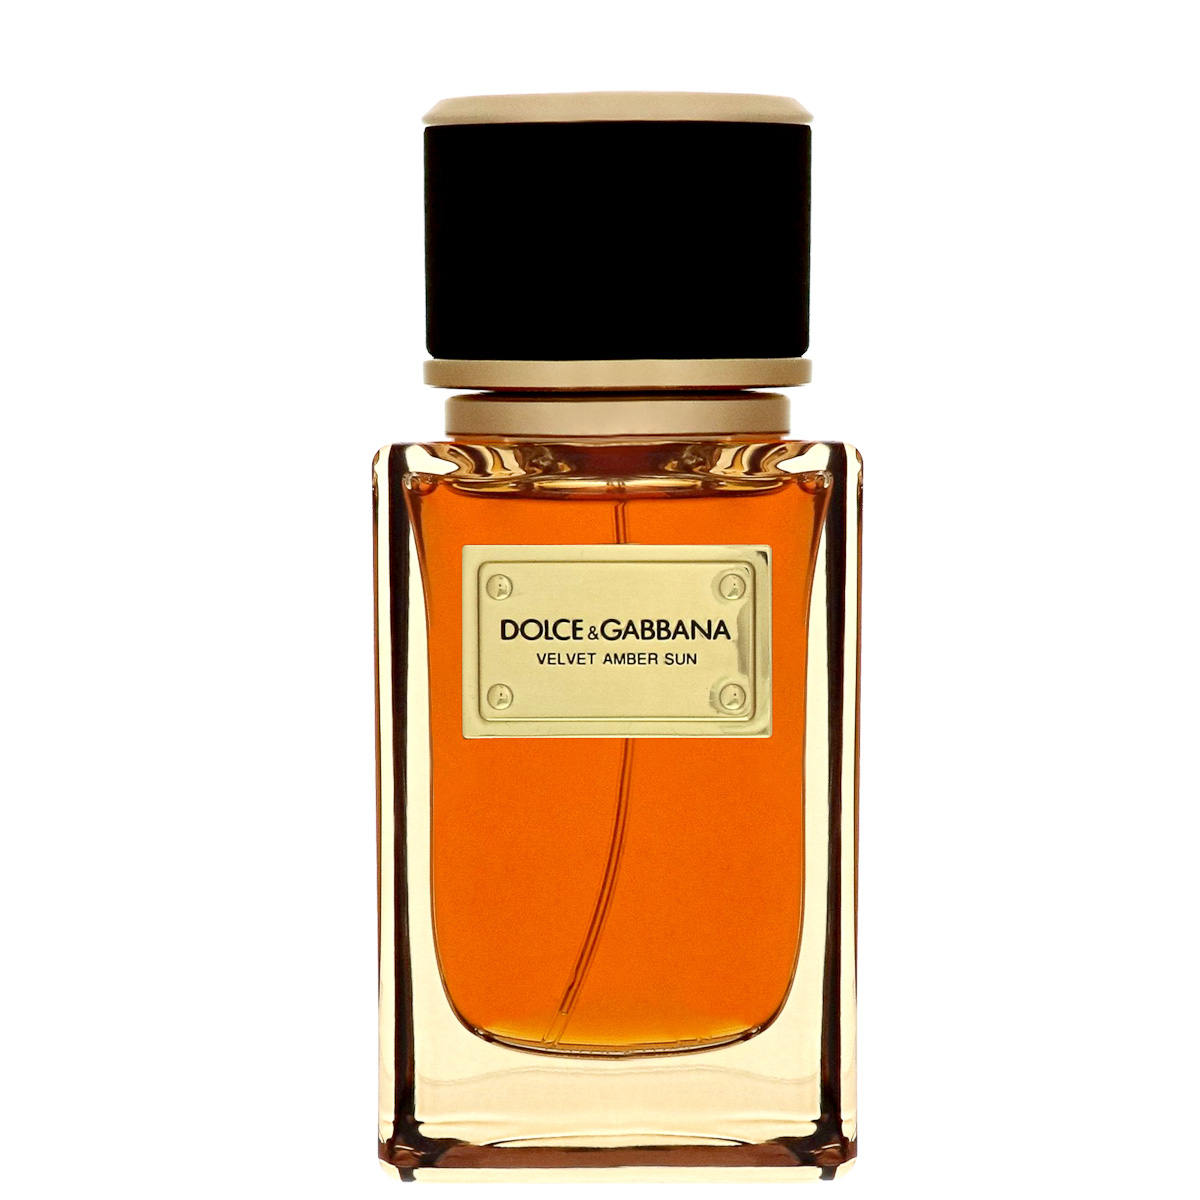 dolce-gabbana-velvet-amber-sun-fragrance-grooming-man-for-himself